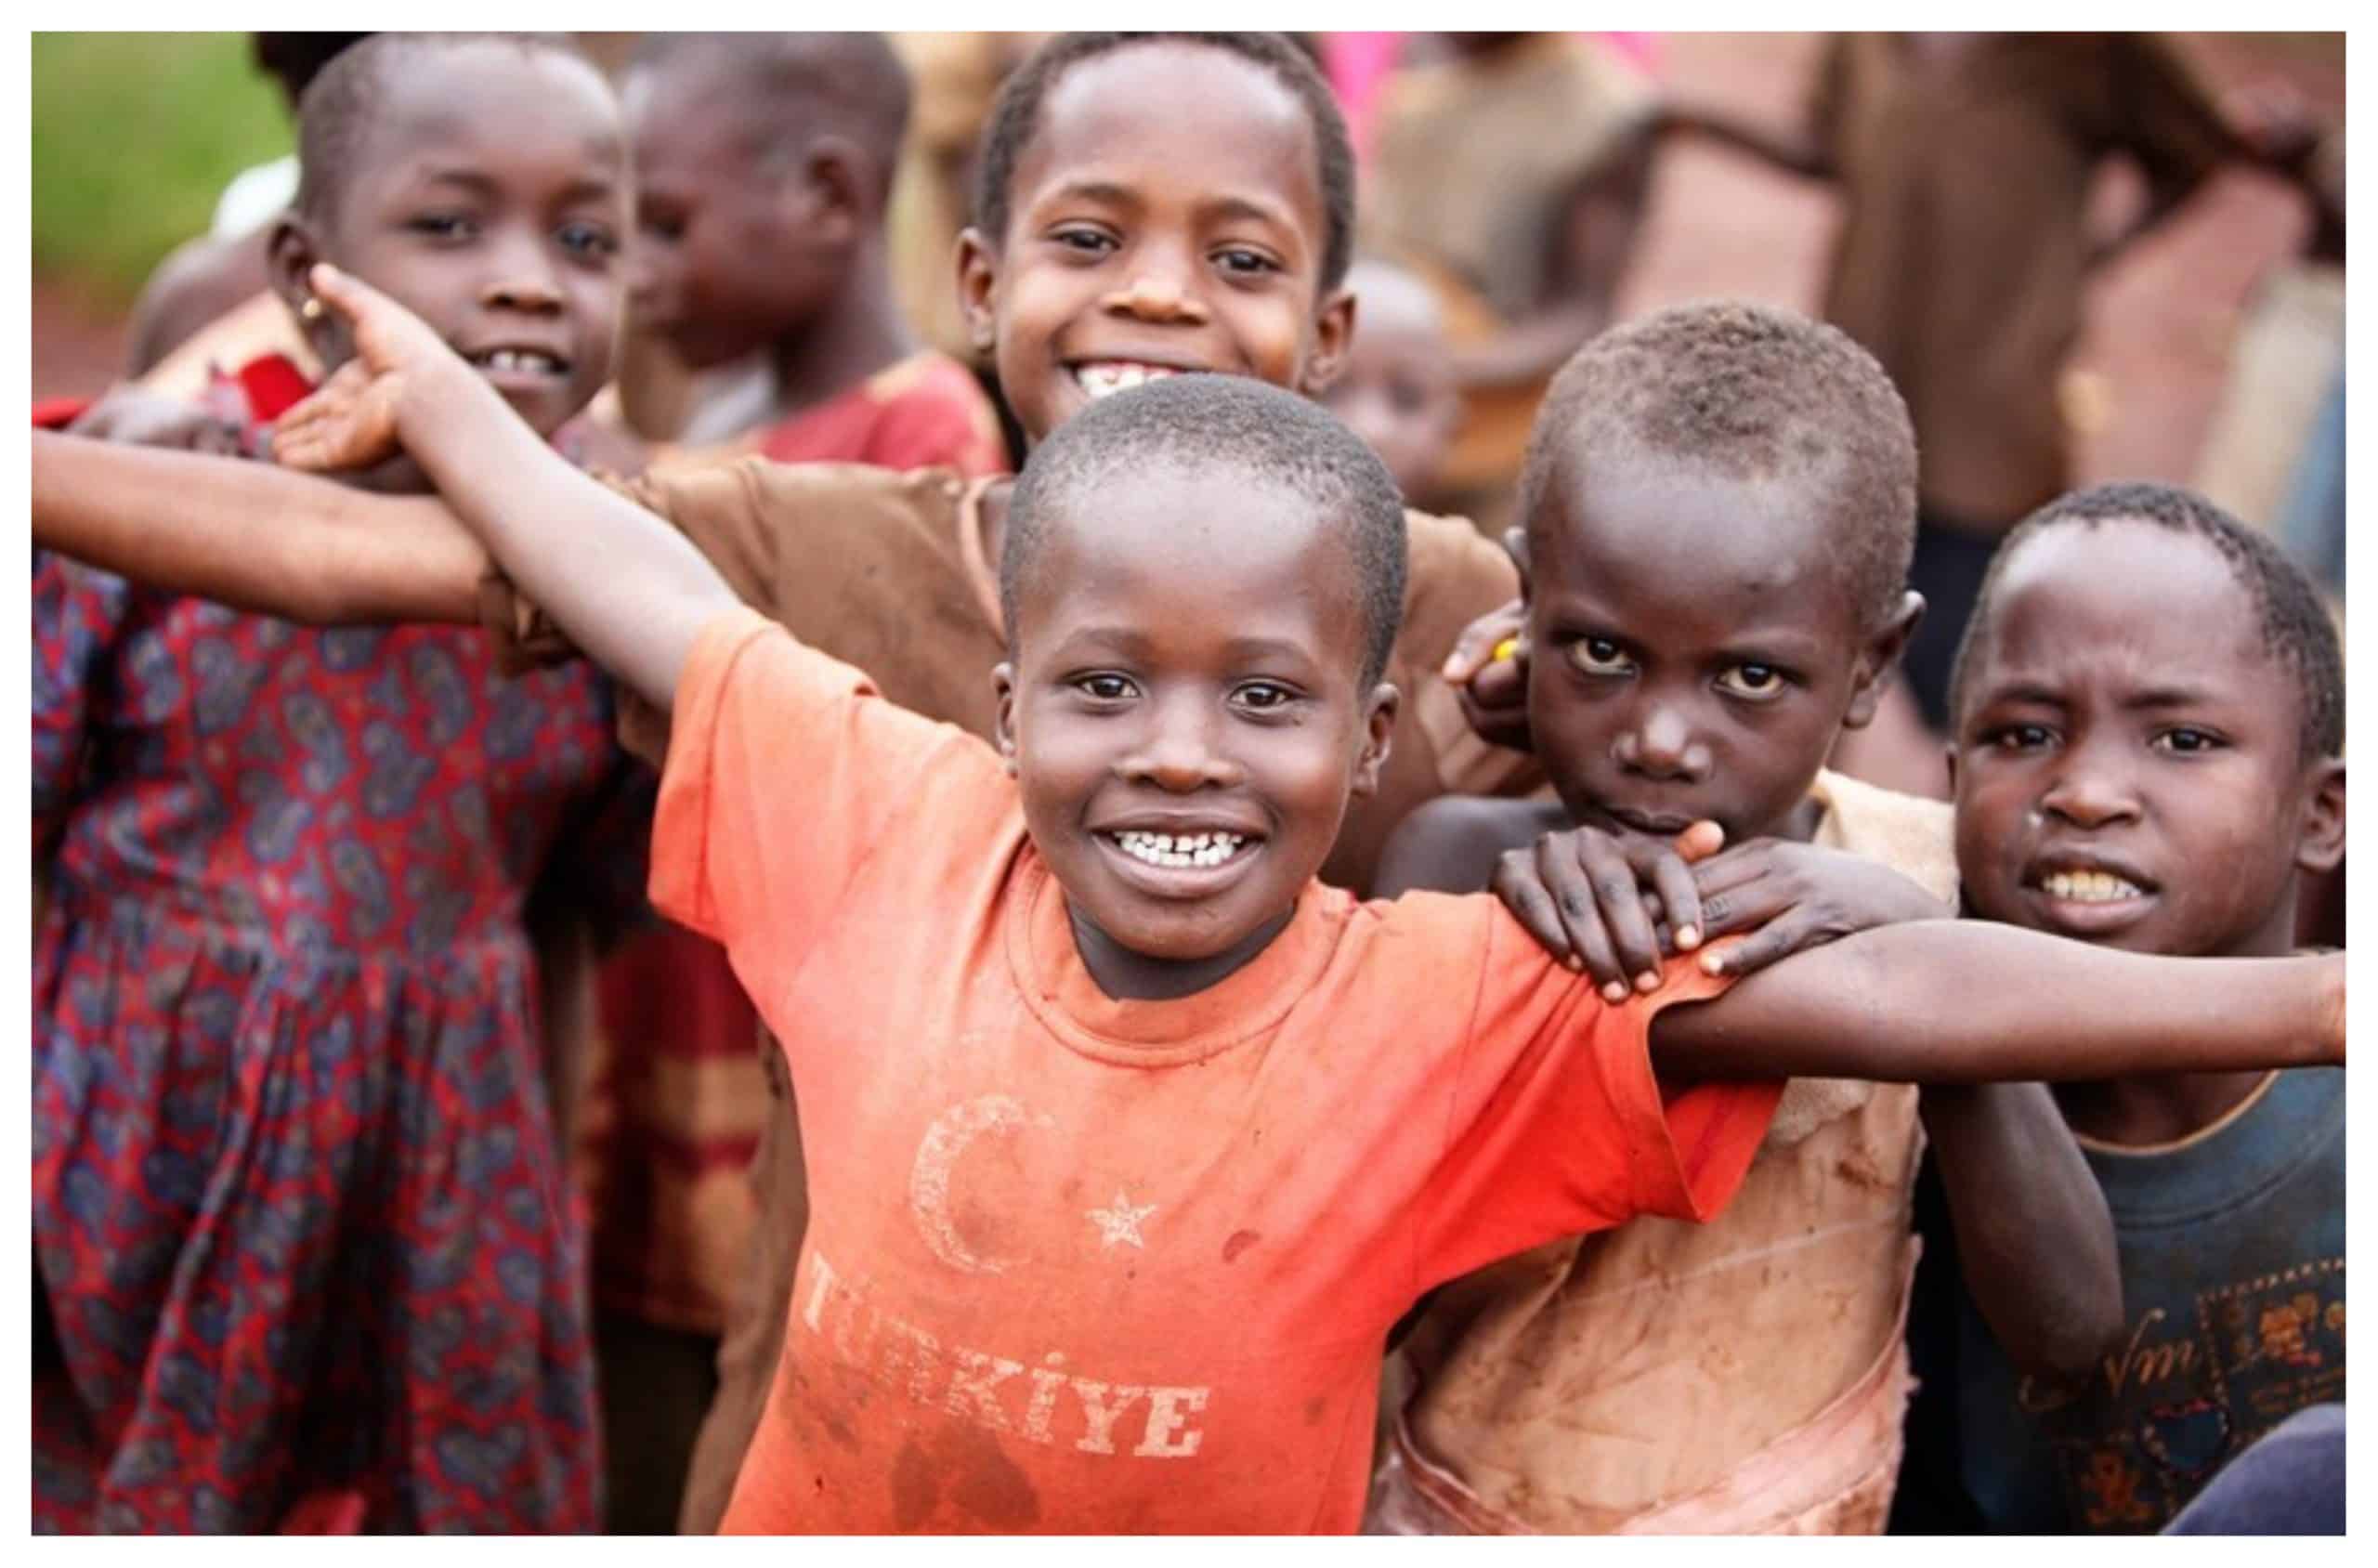 They lives in africa. Счастливые дети Африки. Радостный африканец. Дети Африки радостные.